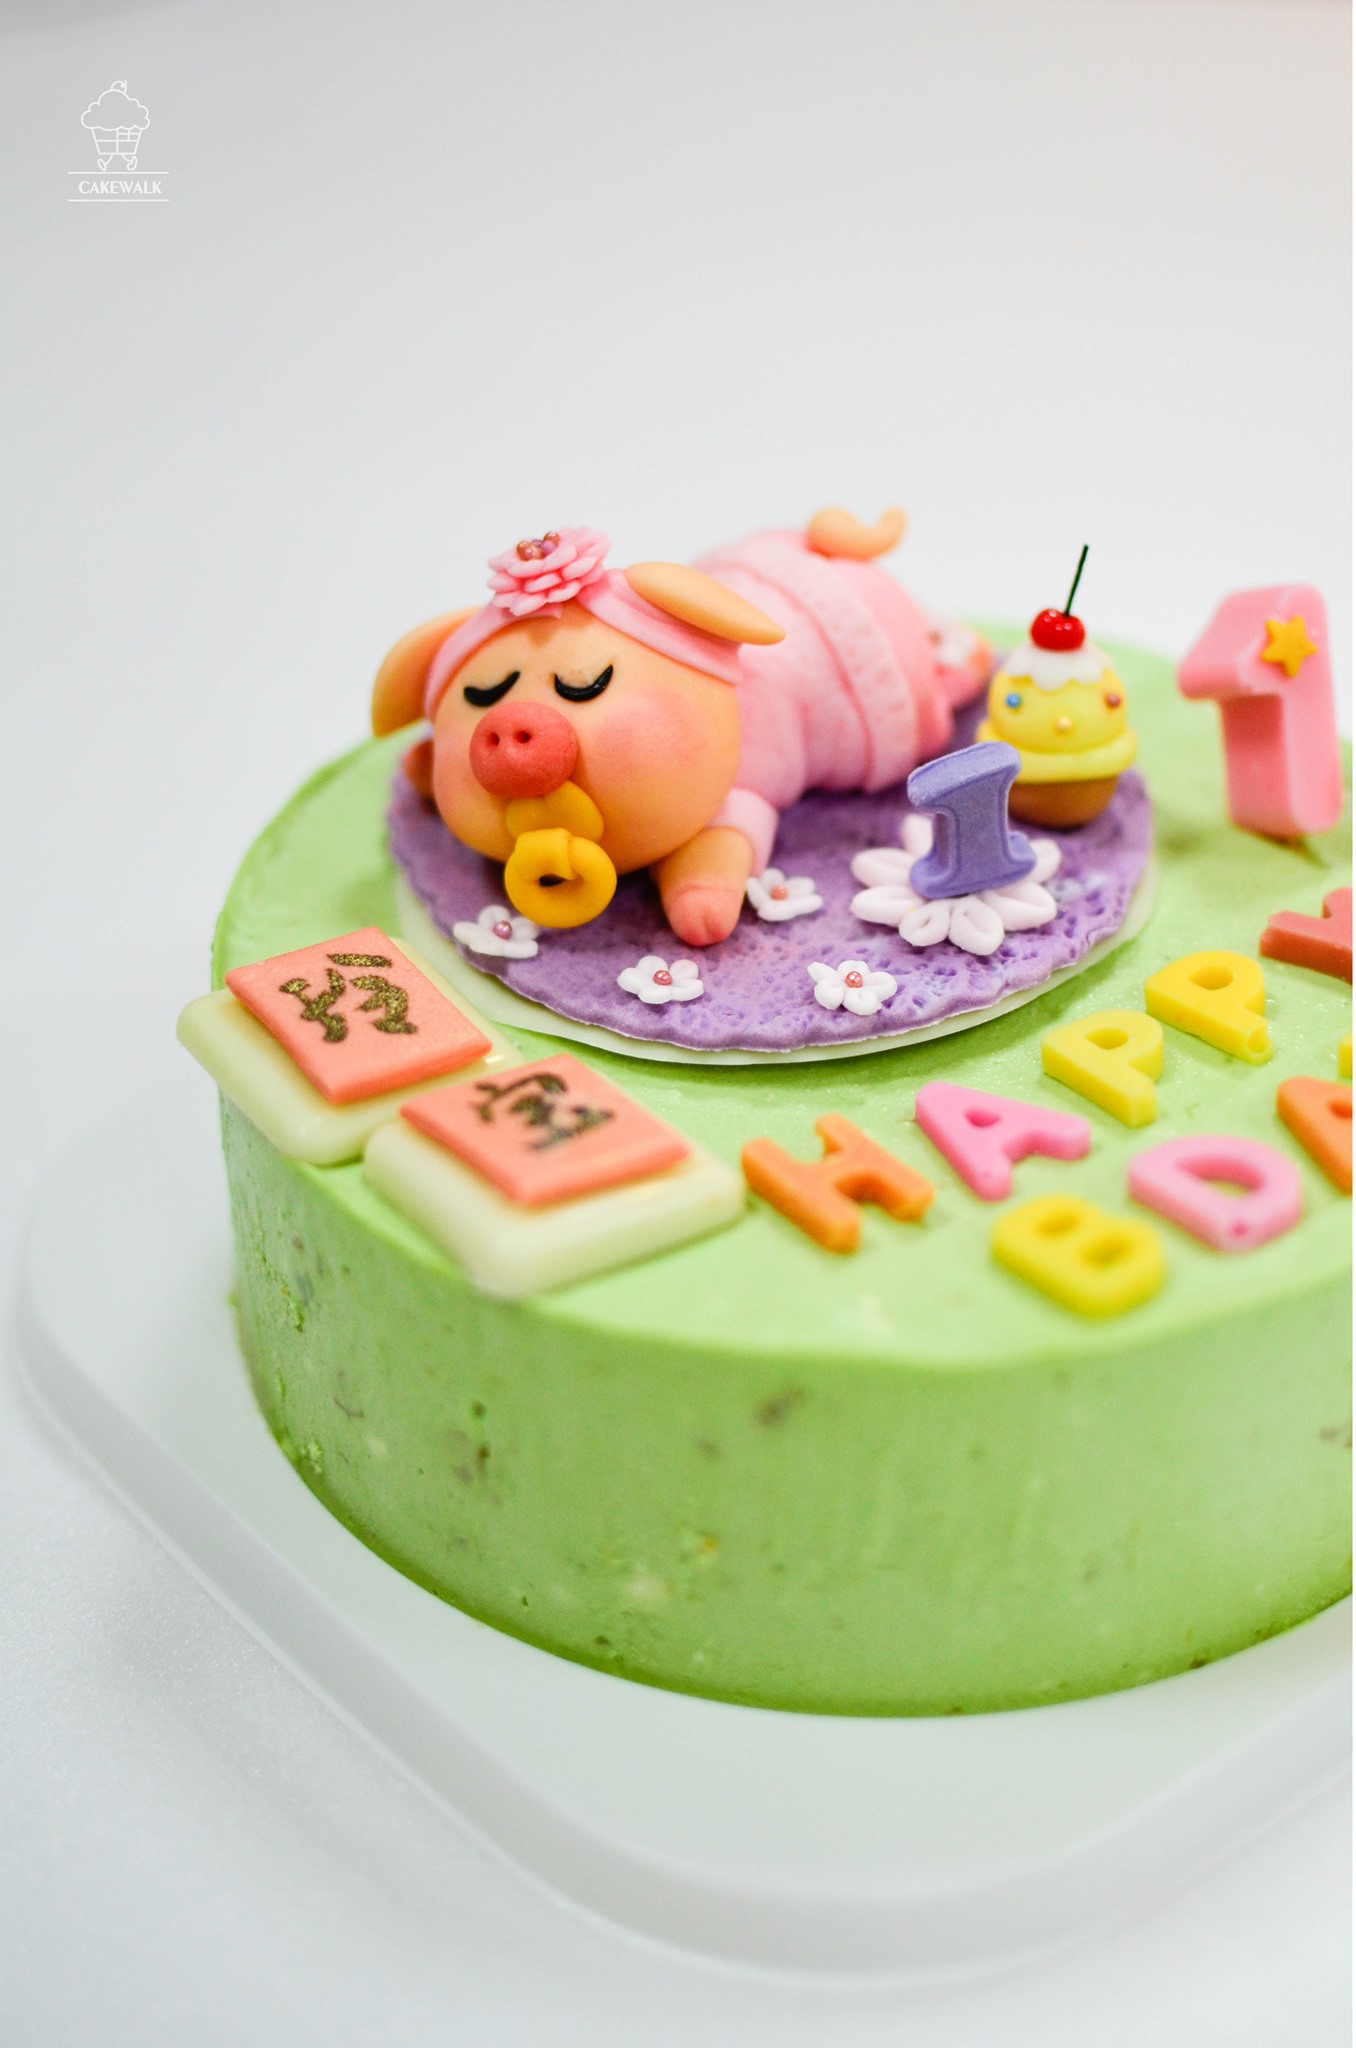 Cakewalk田步田菓子工房客製化造型蛋糕